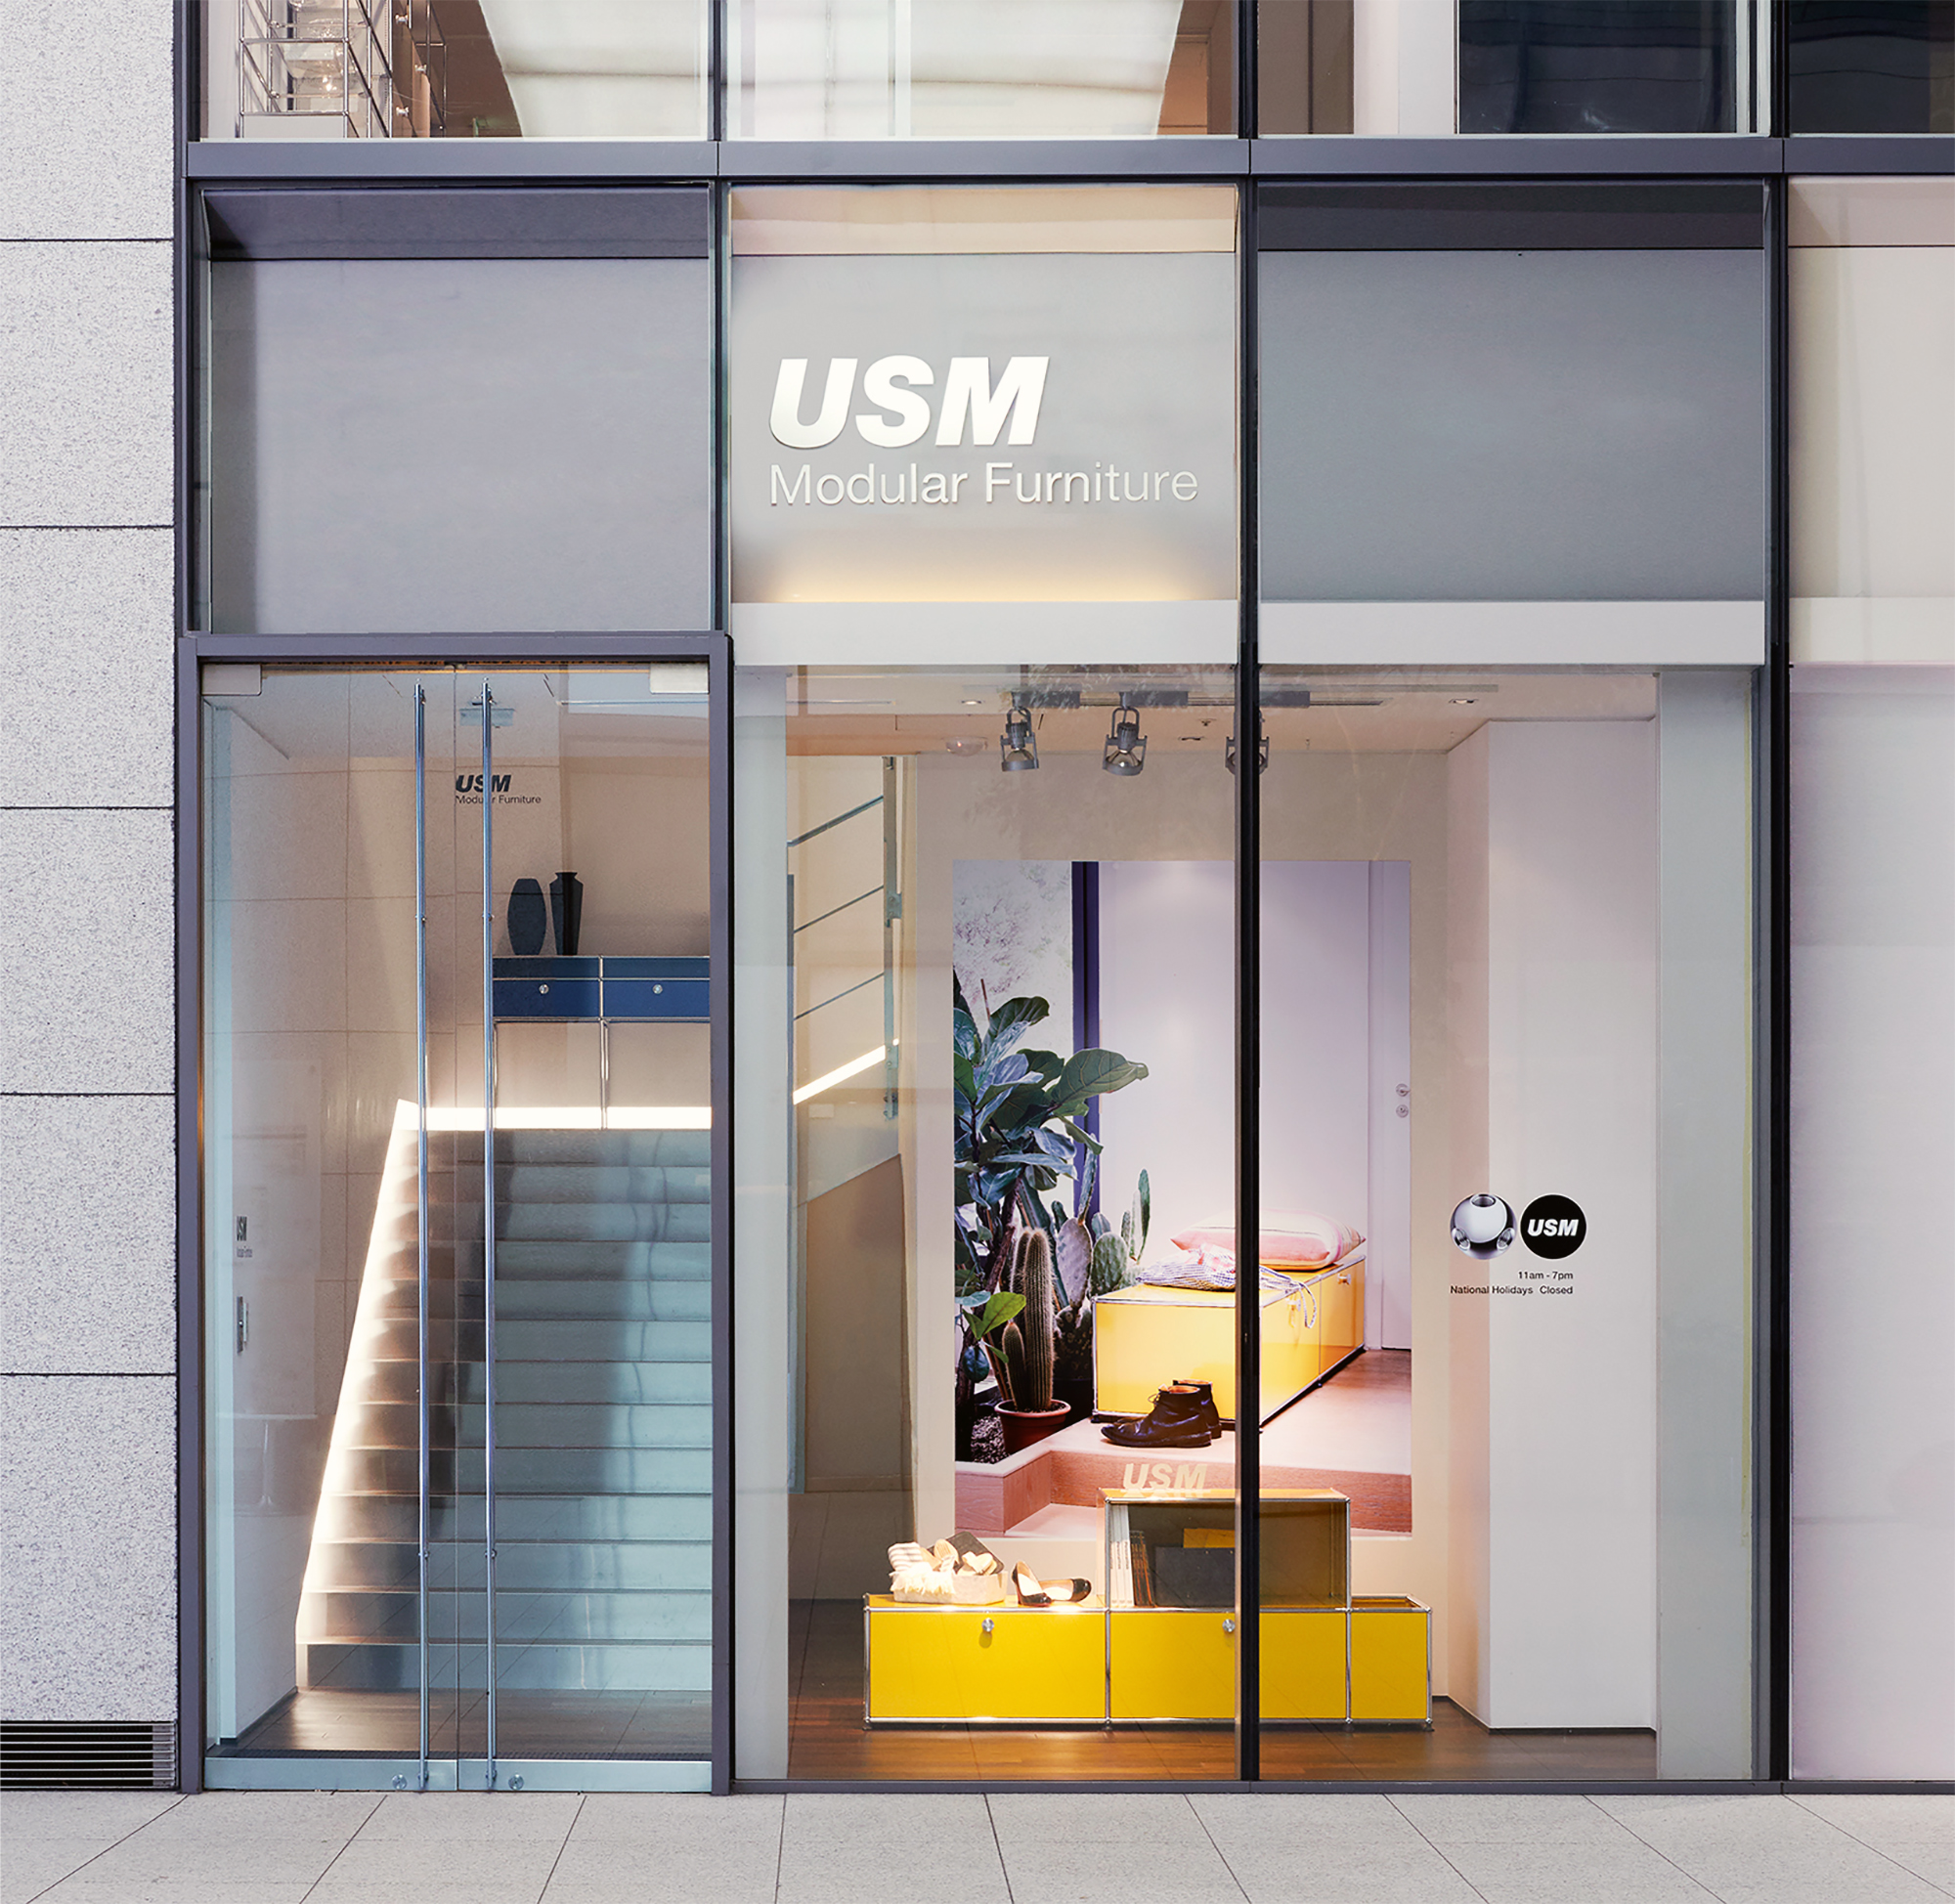 USM Modular Furniture | Grand Tour of Switzerland in Japan